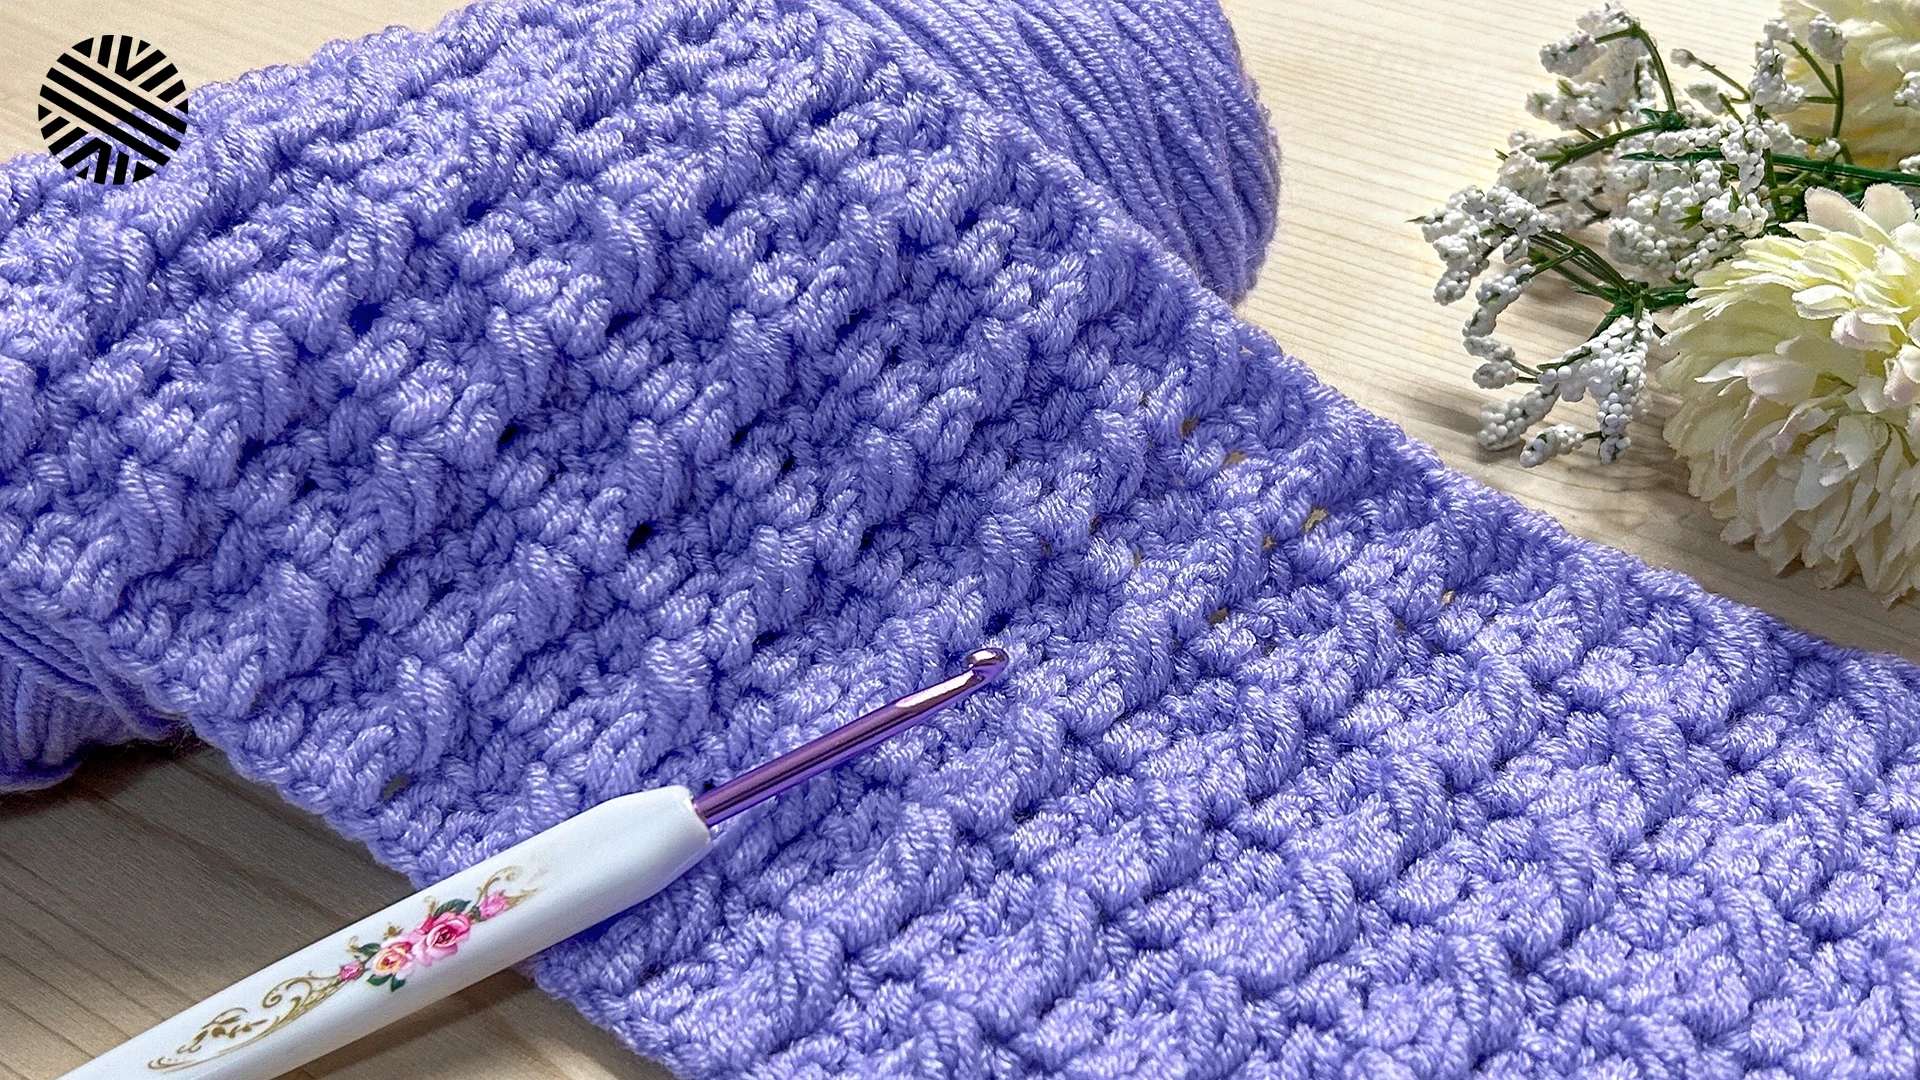 Stunning Crochet Border Pattern for Beginners! Super Easy Crochet